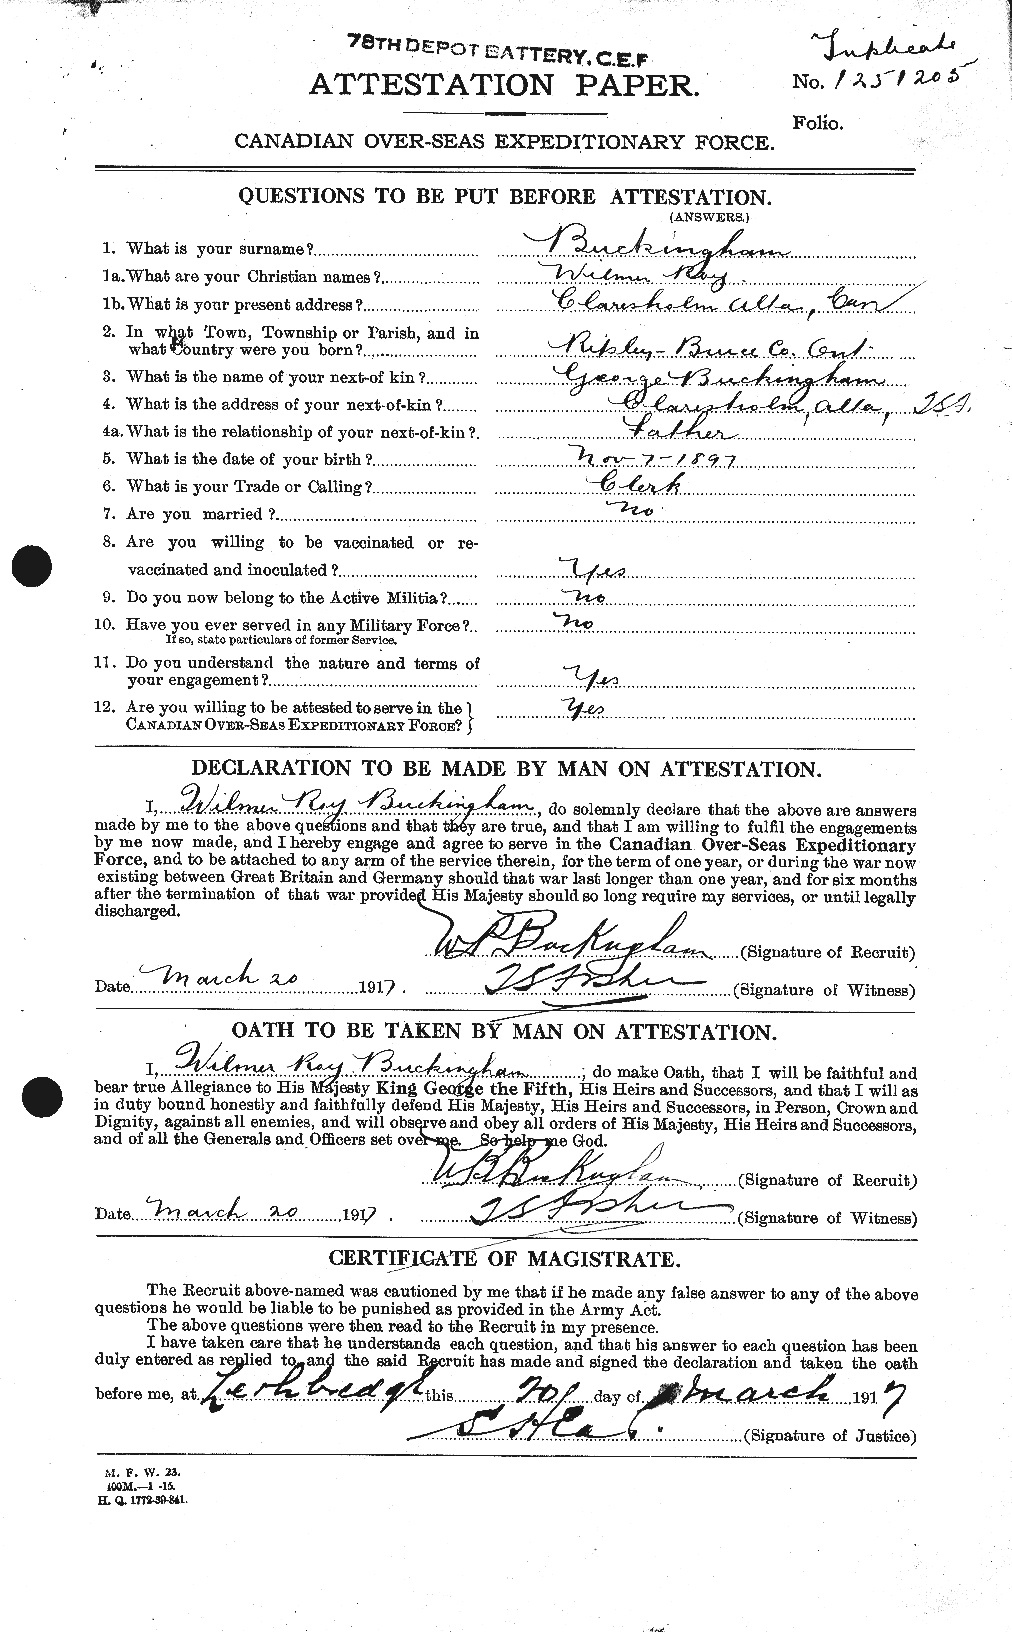 Dossiers du Personnel de la Première Guerre mondiale - CEC 269476a